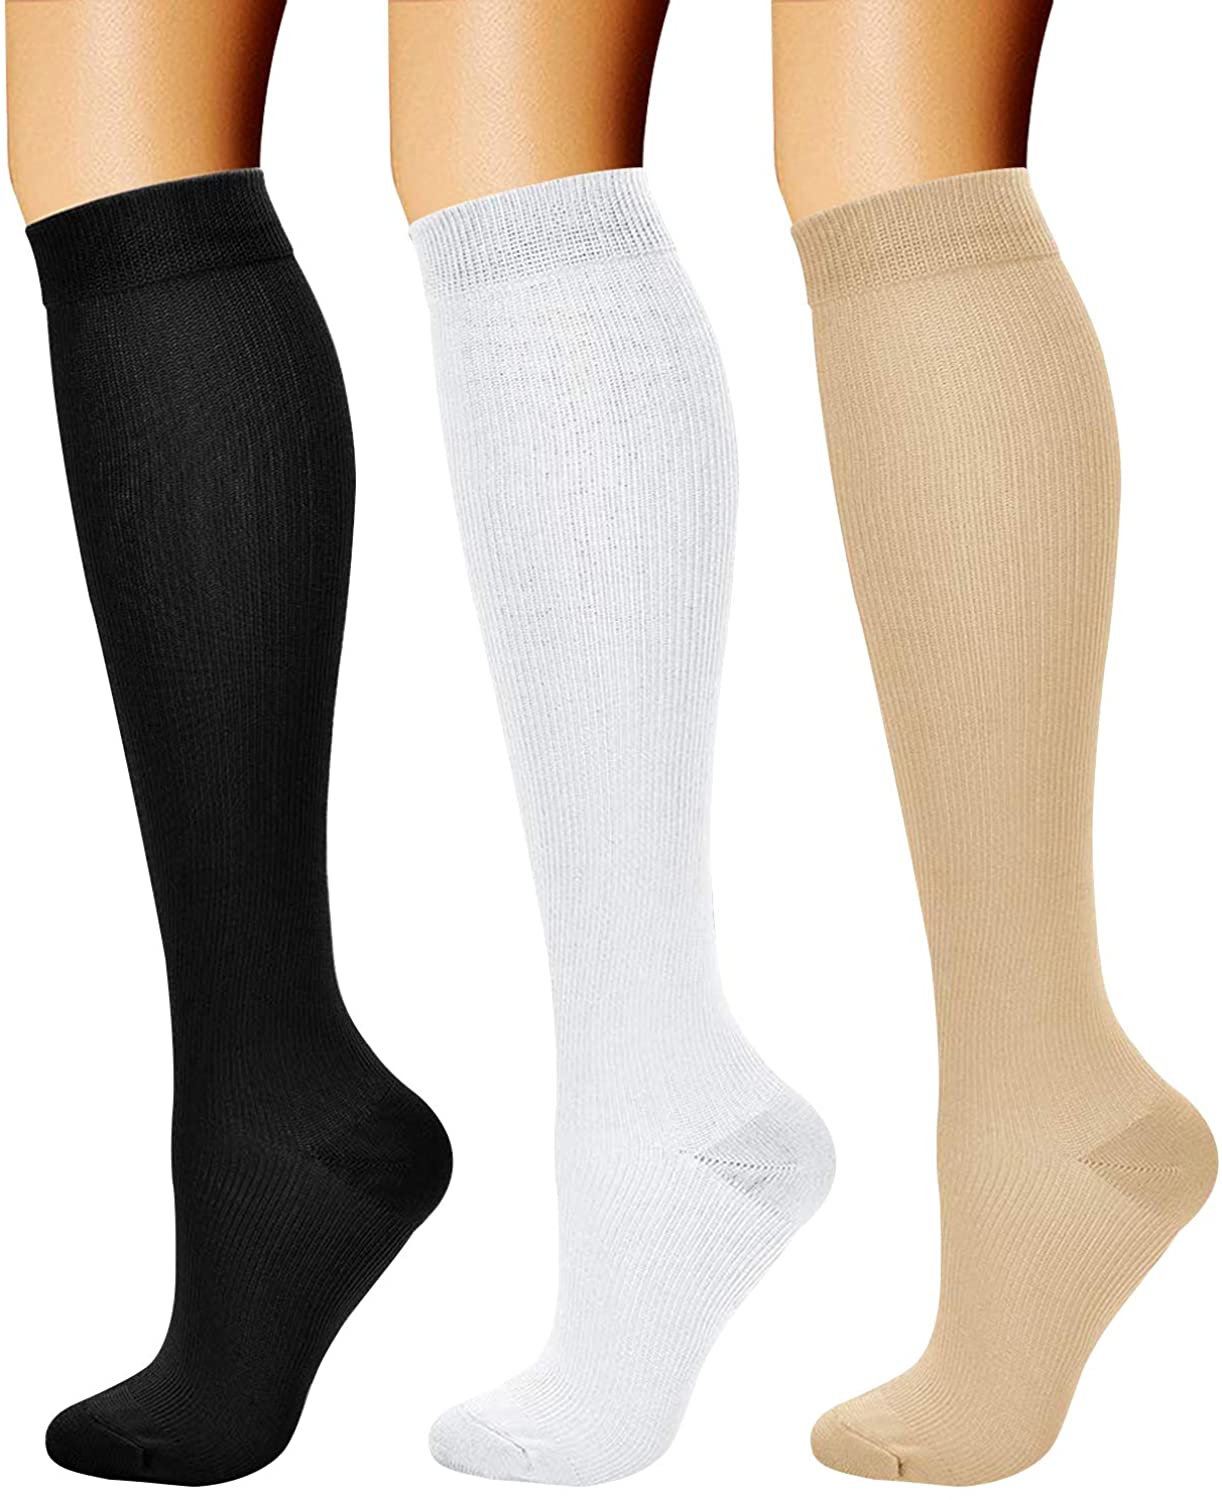 copper compression socks women